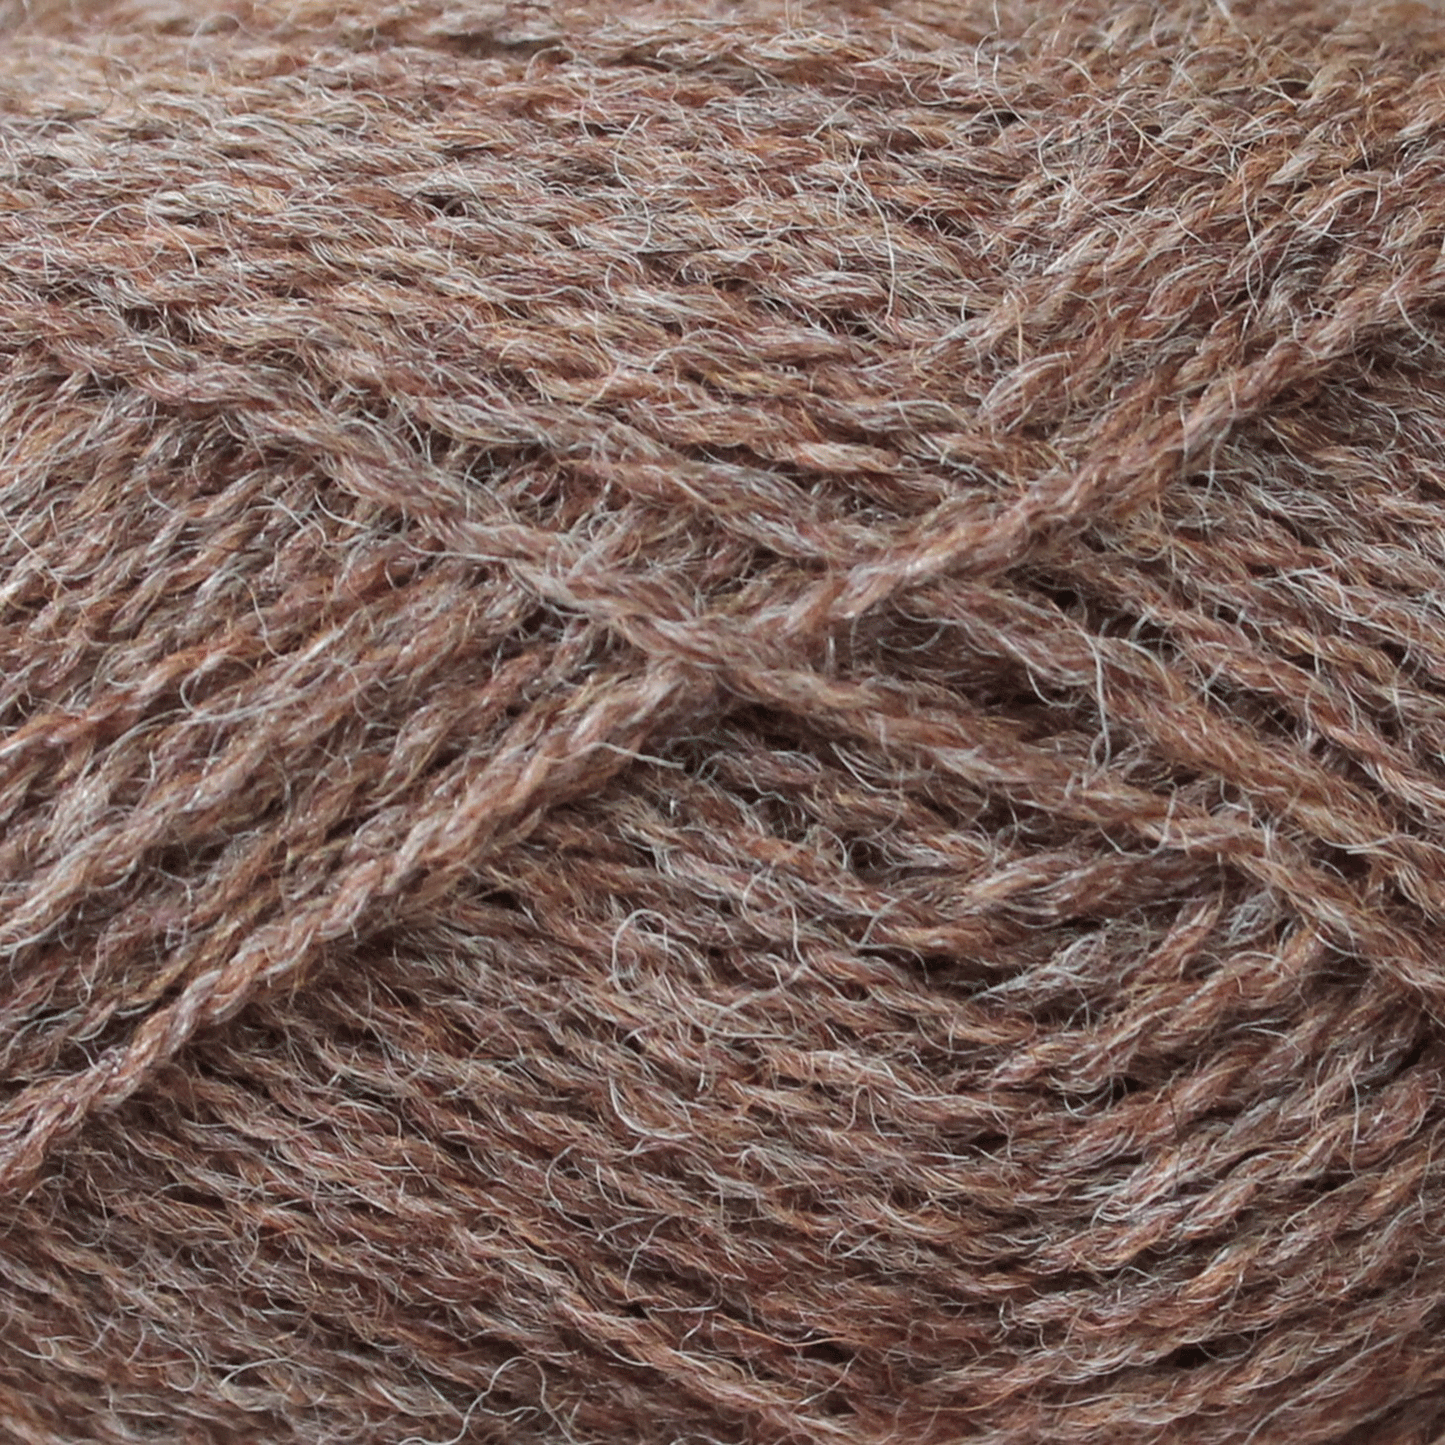 Pip Colourwork 4ply Pack Of 10: 100% British Hand Knitting Wool 25g Ball